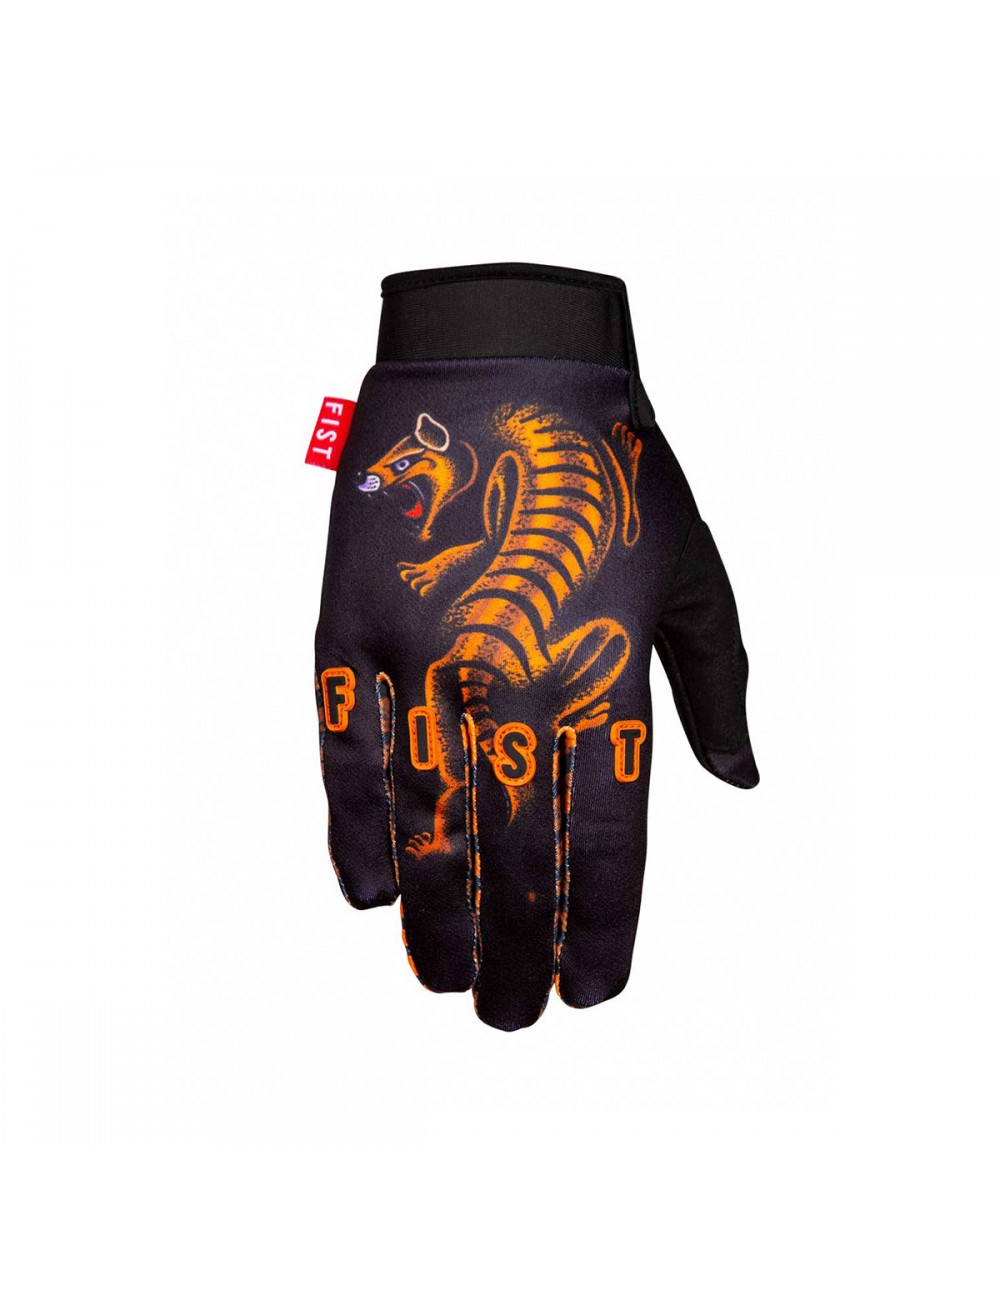 Fist Gloves - Matty Phillips Tassie Tiger